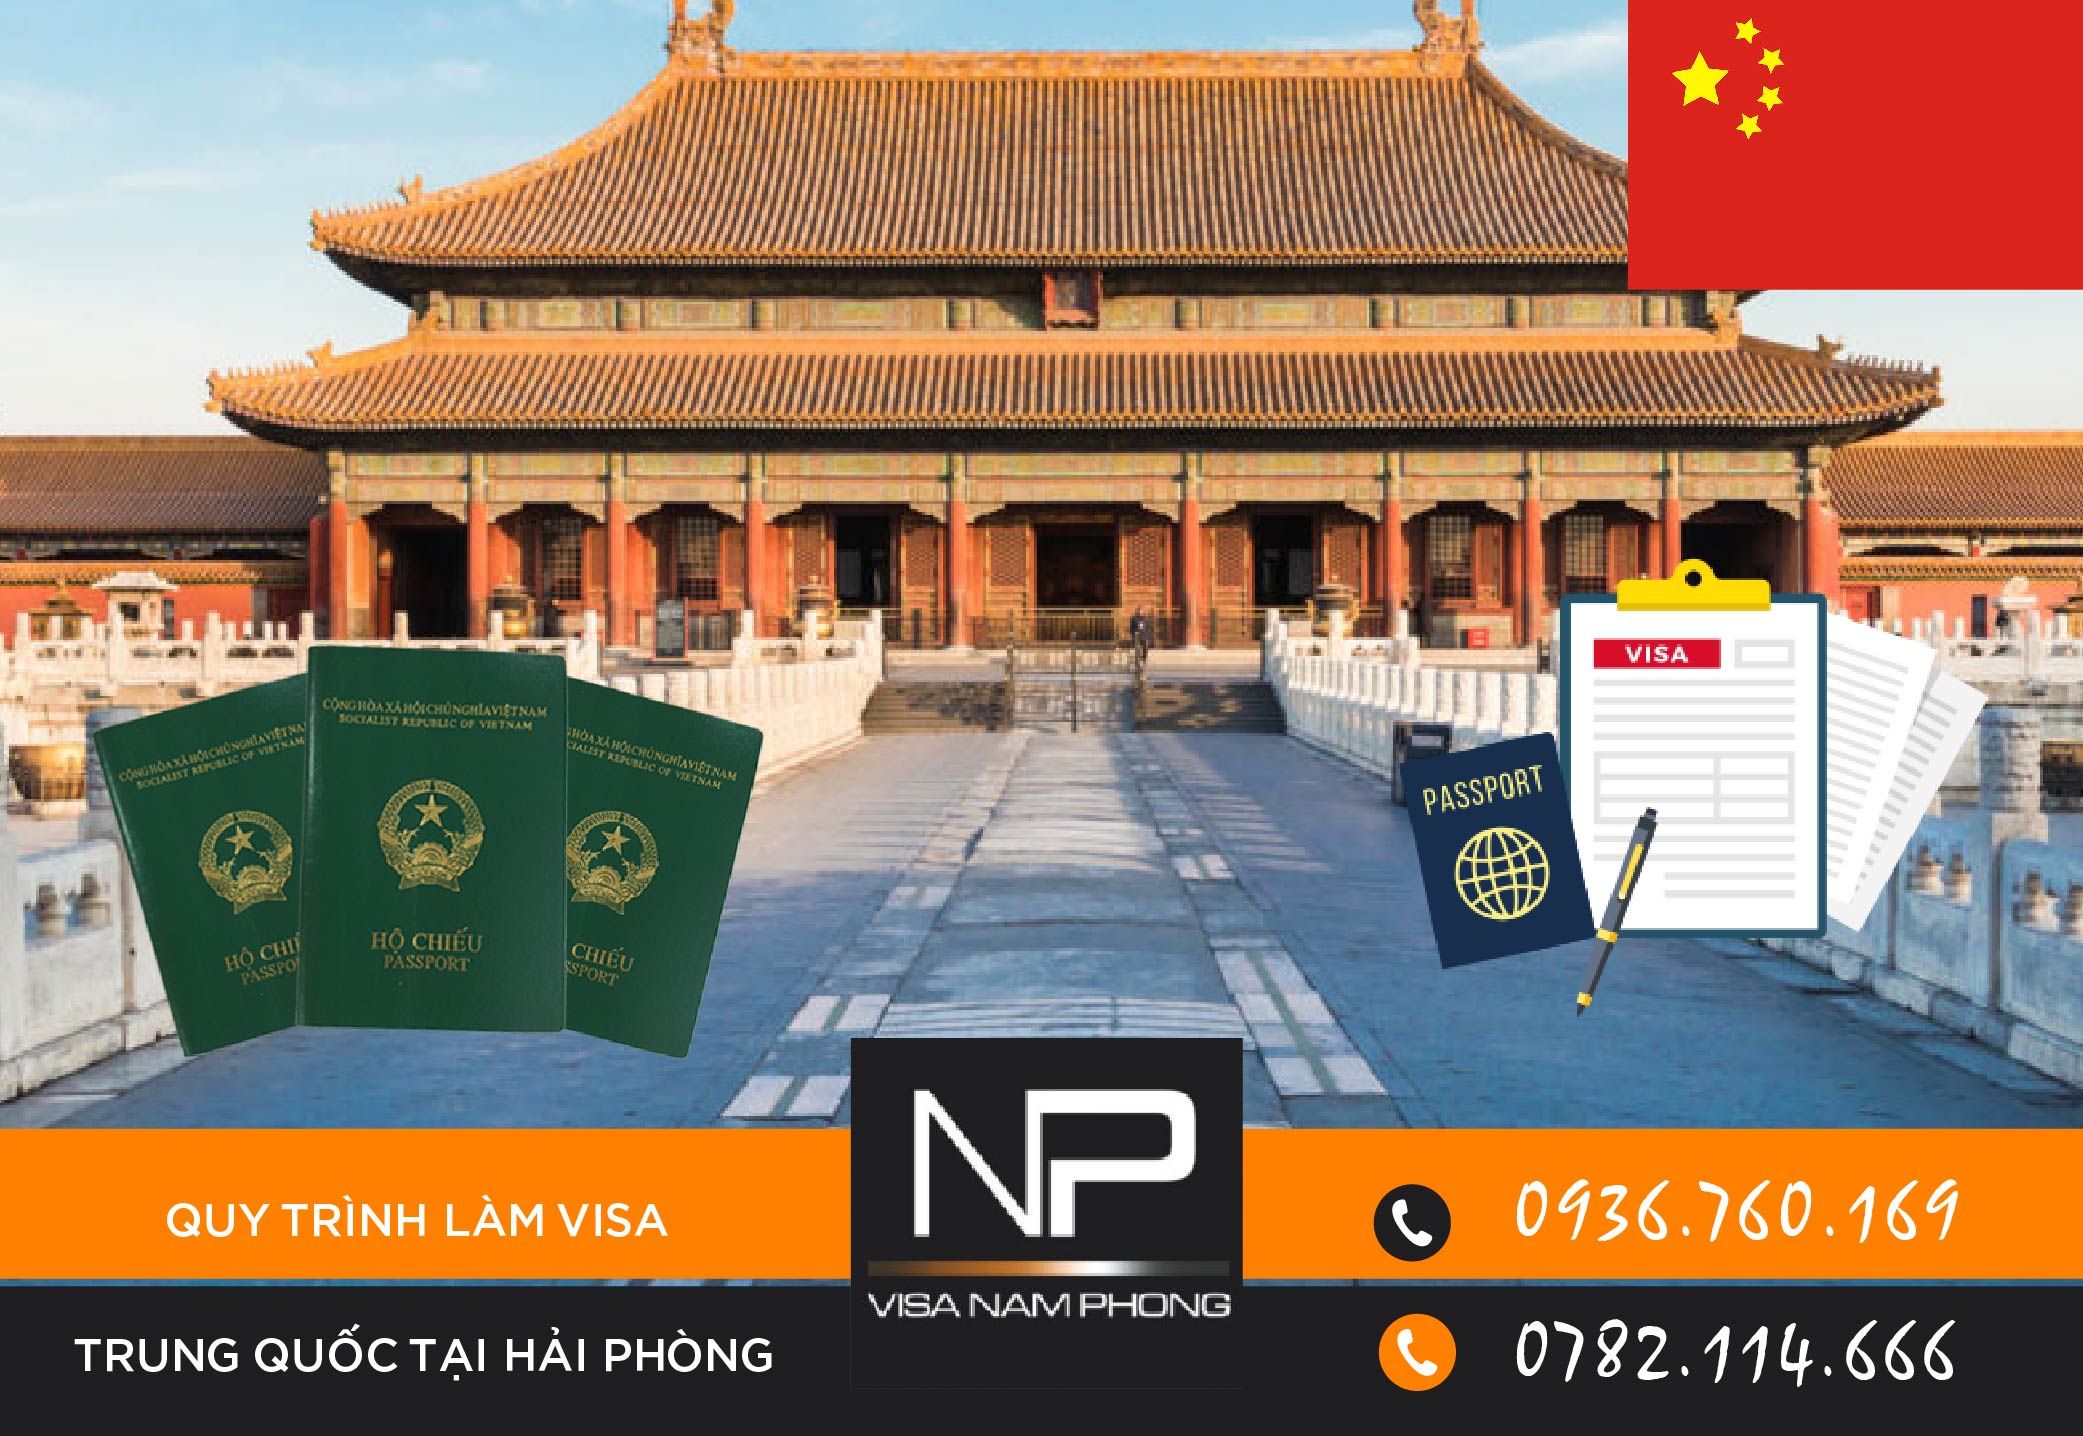 Quy trình chuẩn bị hồ sơ xin visa Trung Quốc tại Hải Phòng